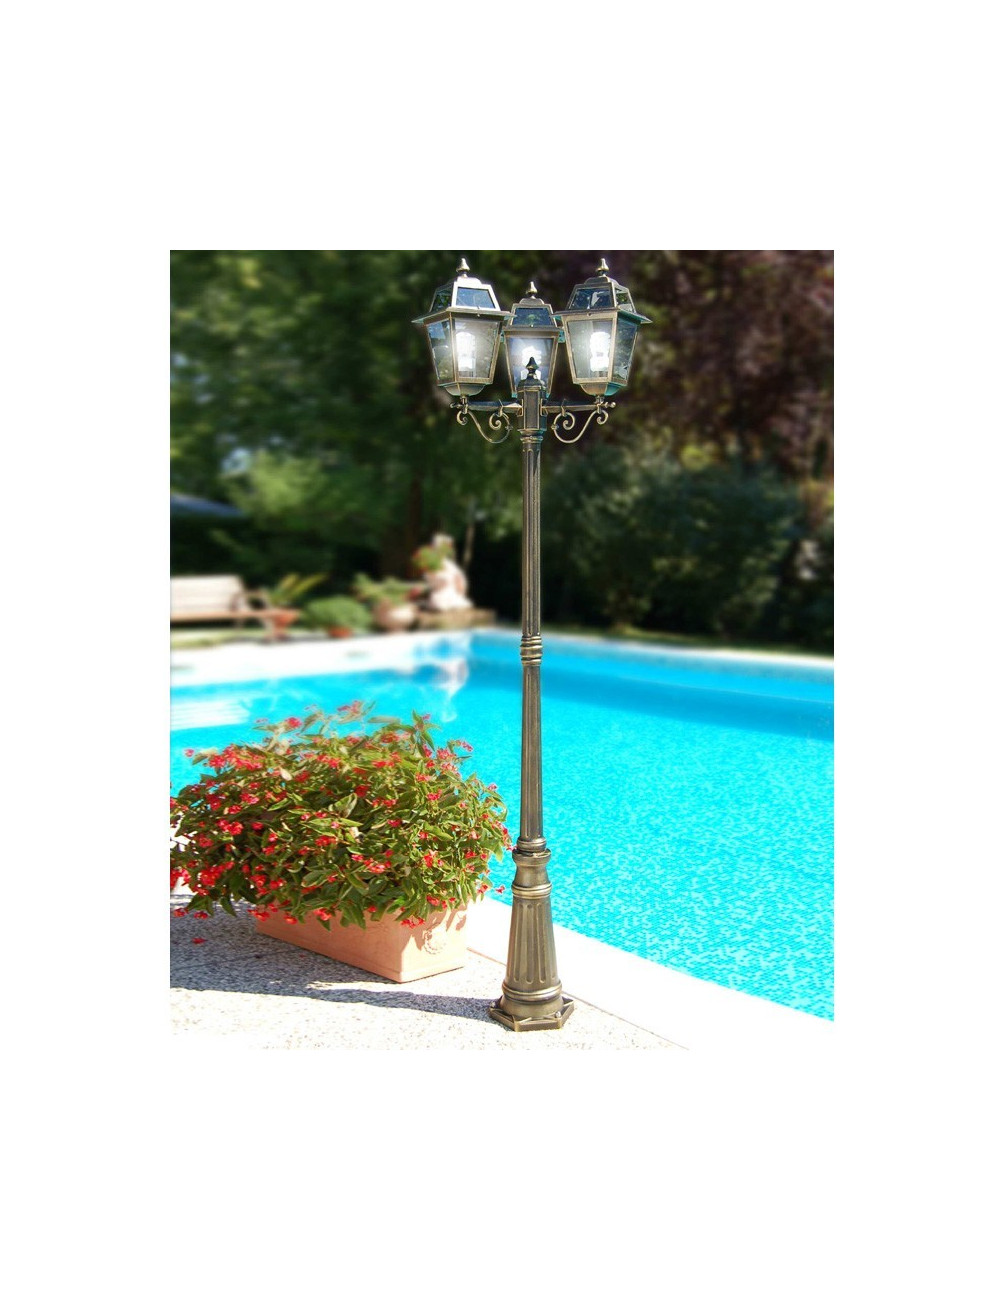 ARTEMIDE Palo Street lamp Classic Lantern Outdoor Garden Lighting